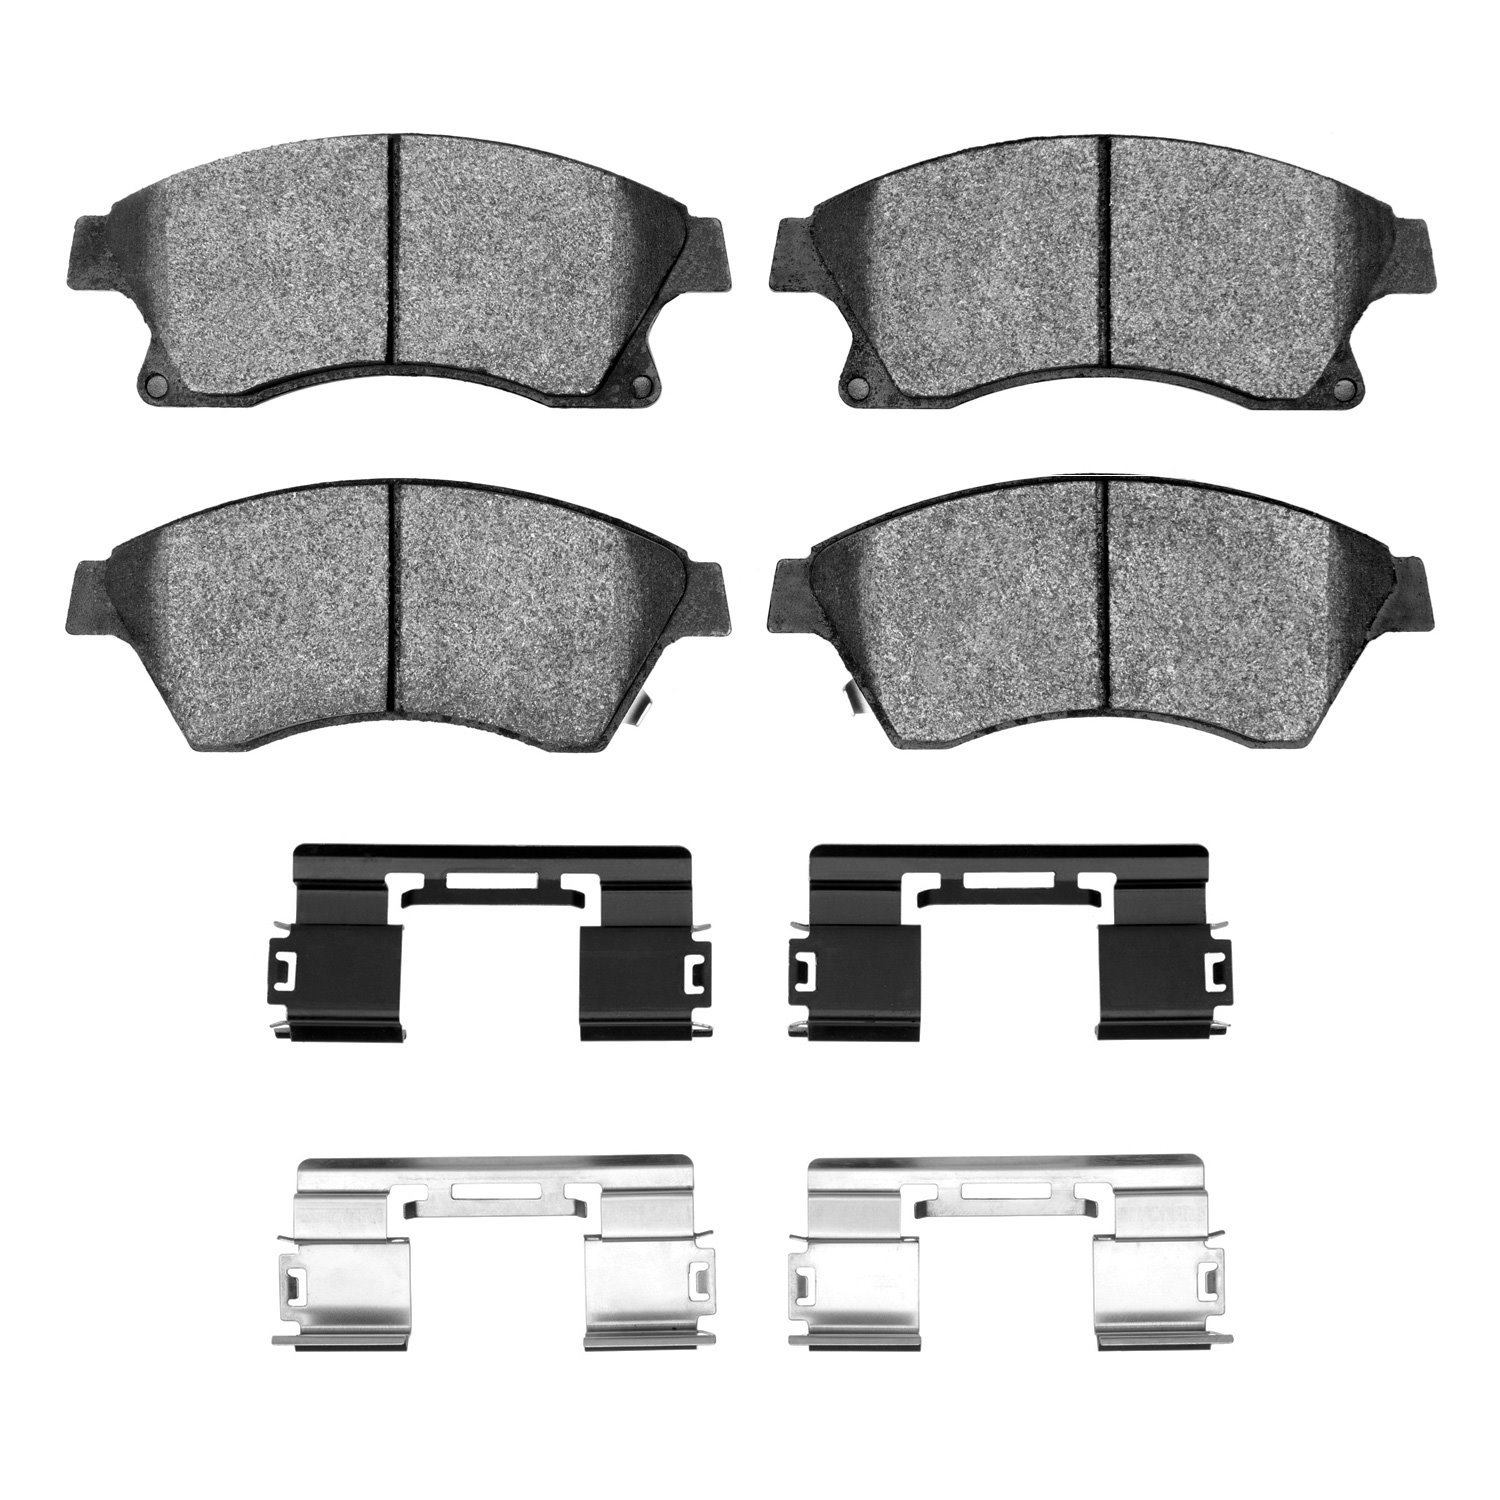 1310-1522-01 3000-Series Ceramic Brake Pads & Hardware Kit, 2011-2017 GM, Position: Front